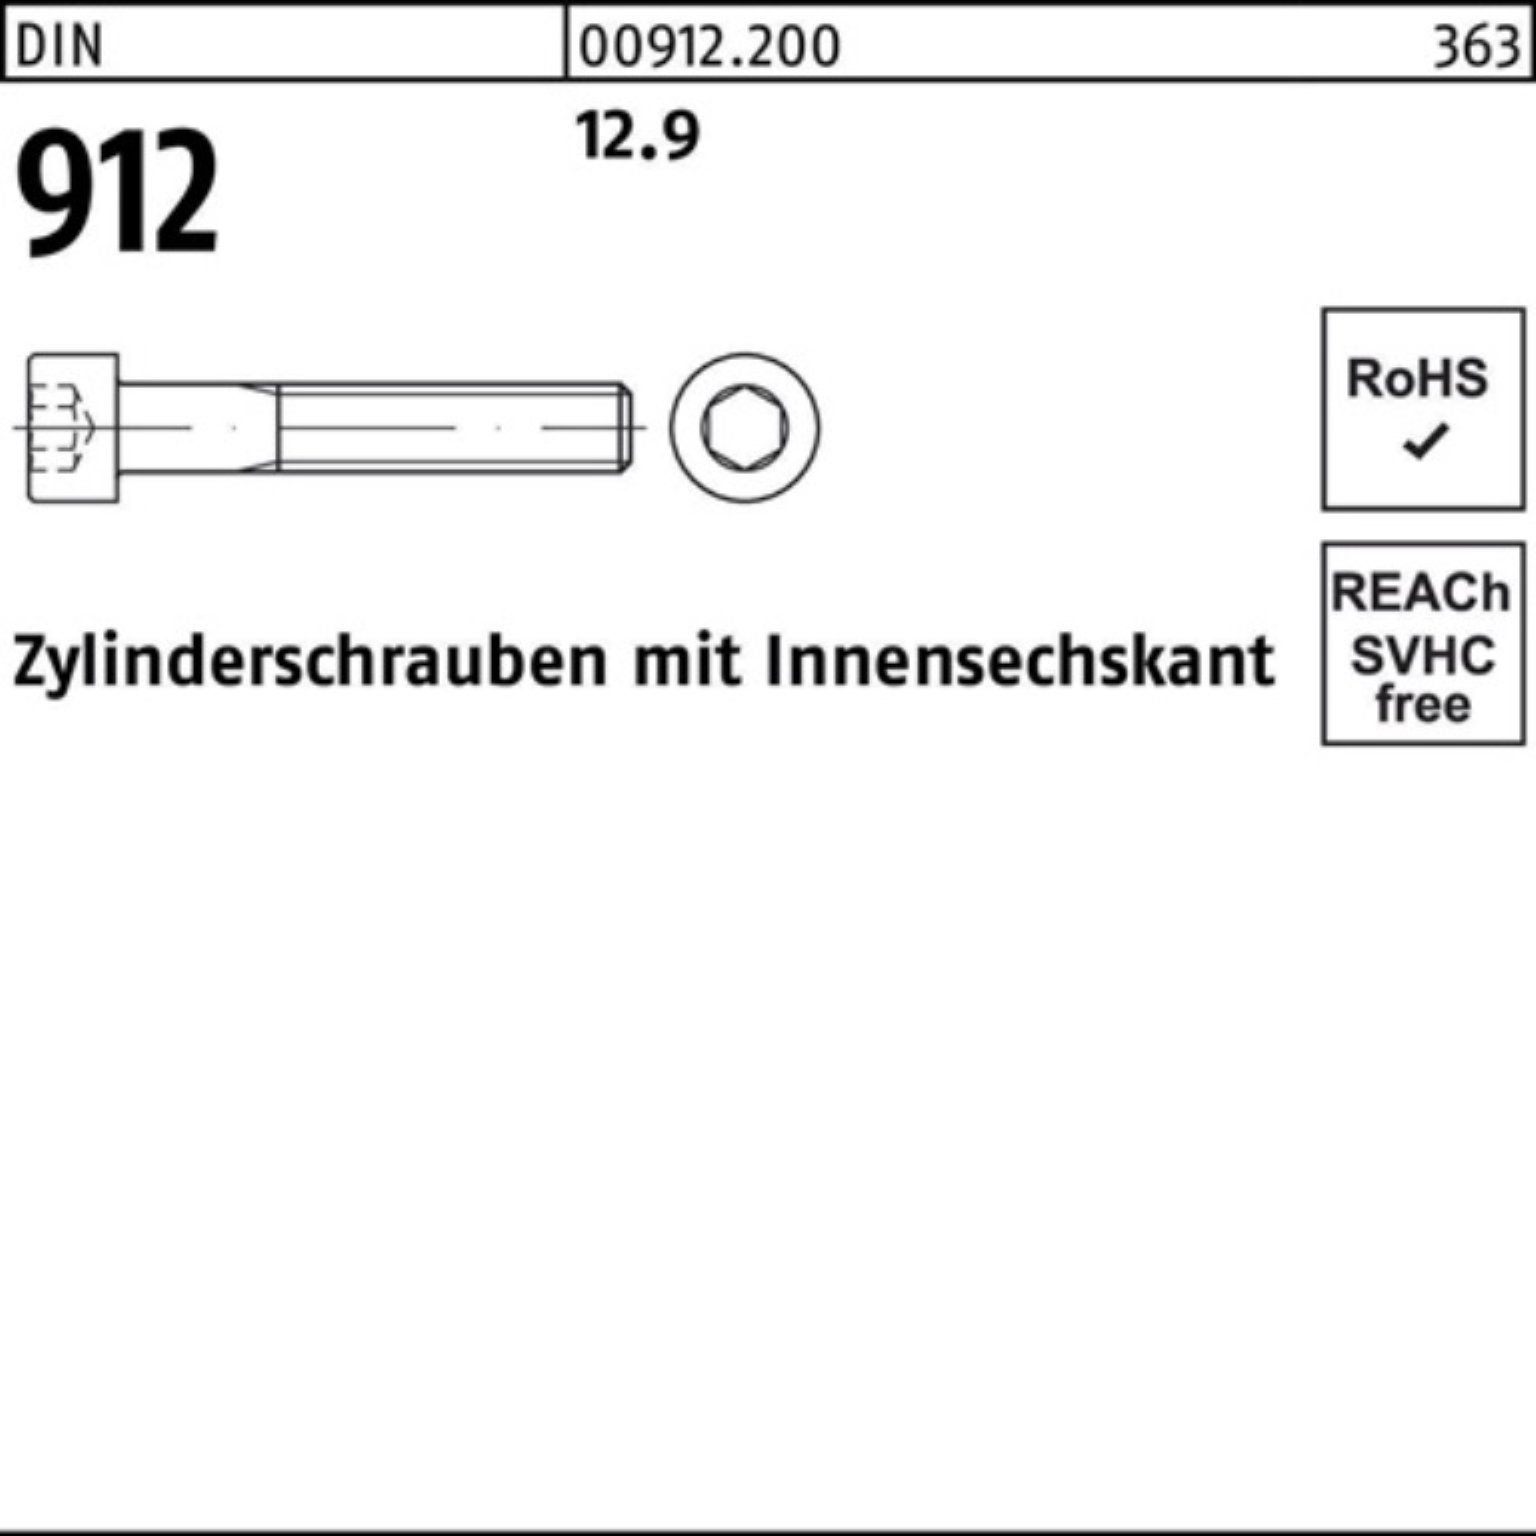 DIN 260 912 Zylinderschraube 1 Zylinderschraube D 12.9 100er Pack Reyher Stück Innen-6kt M39x